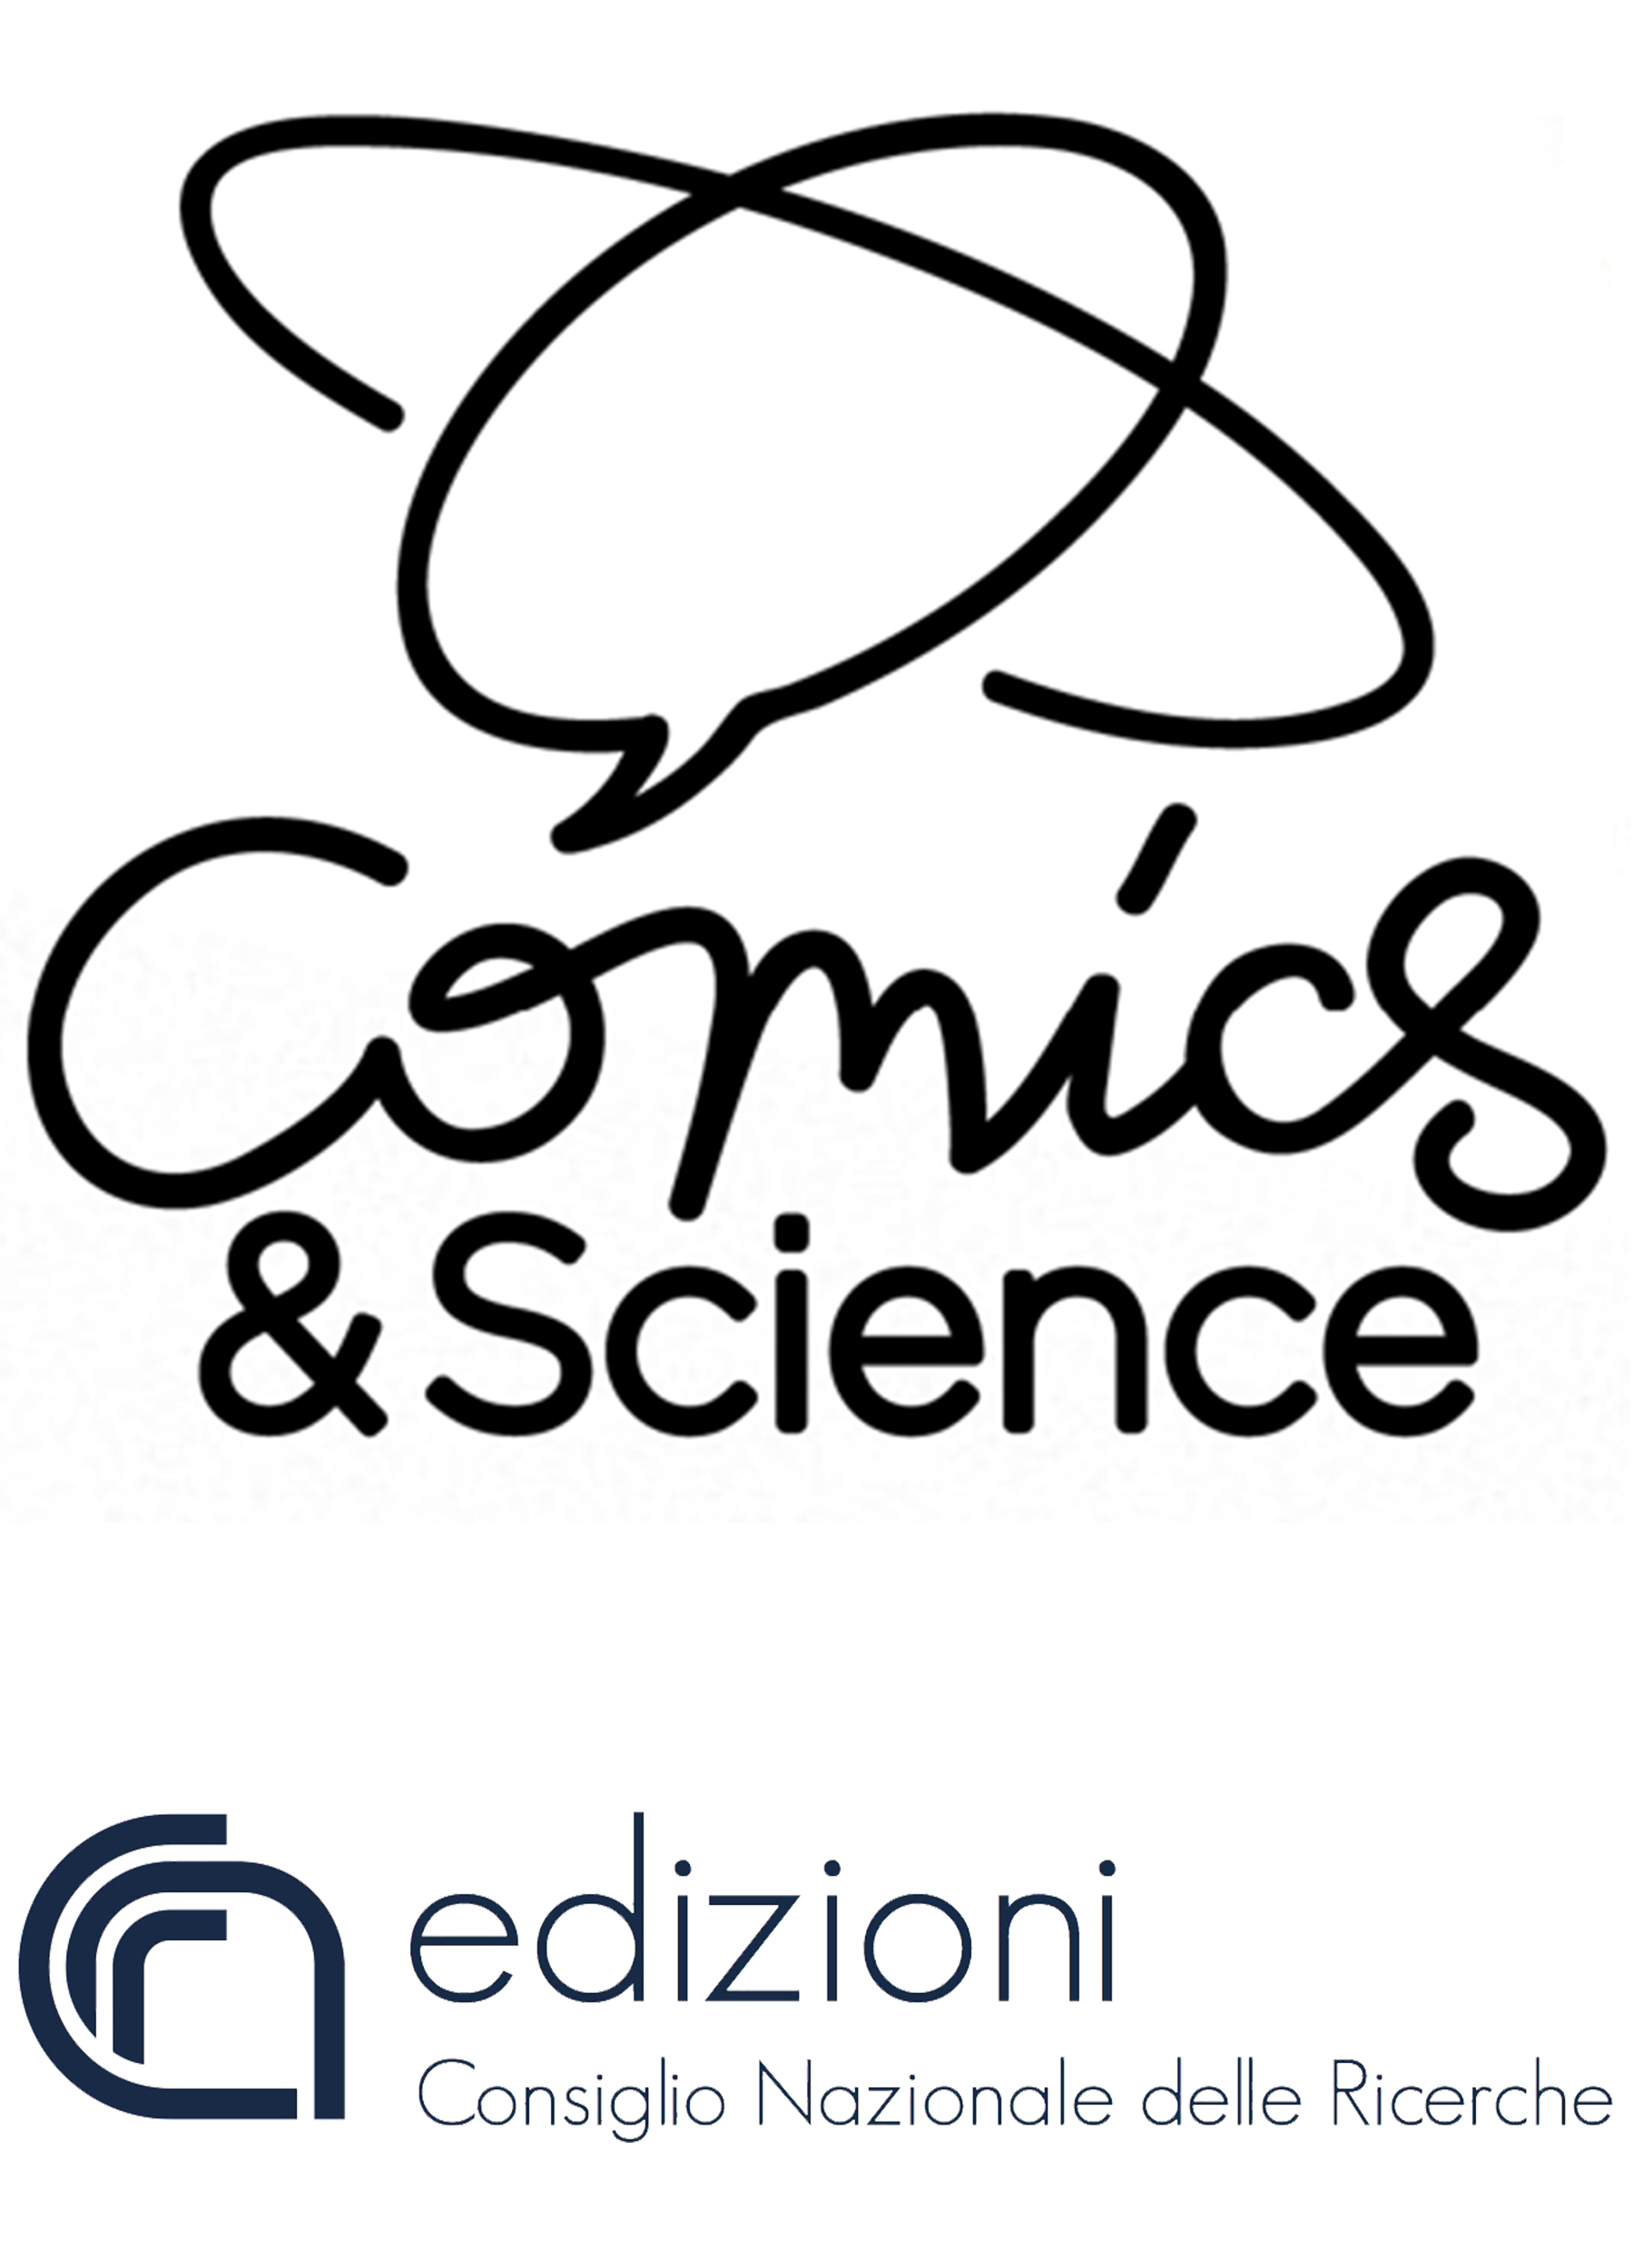 Comics & Science - Cnr Edizioni